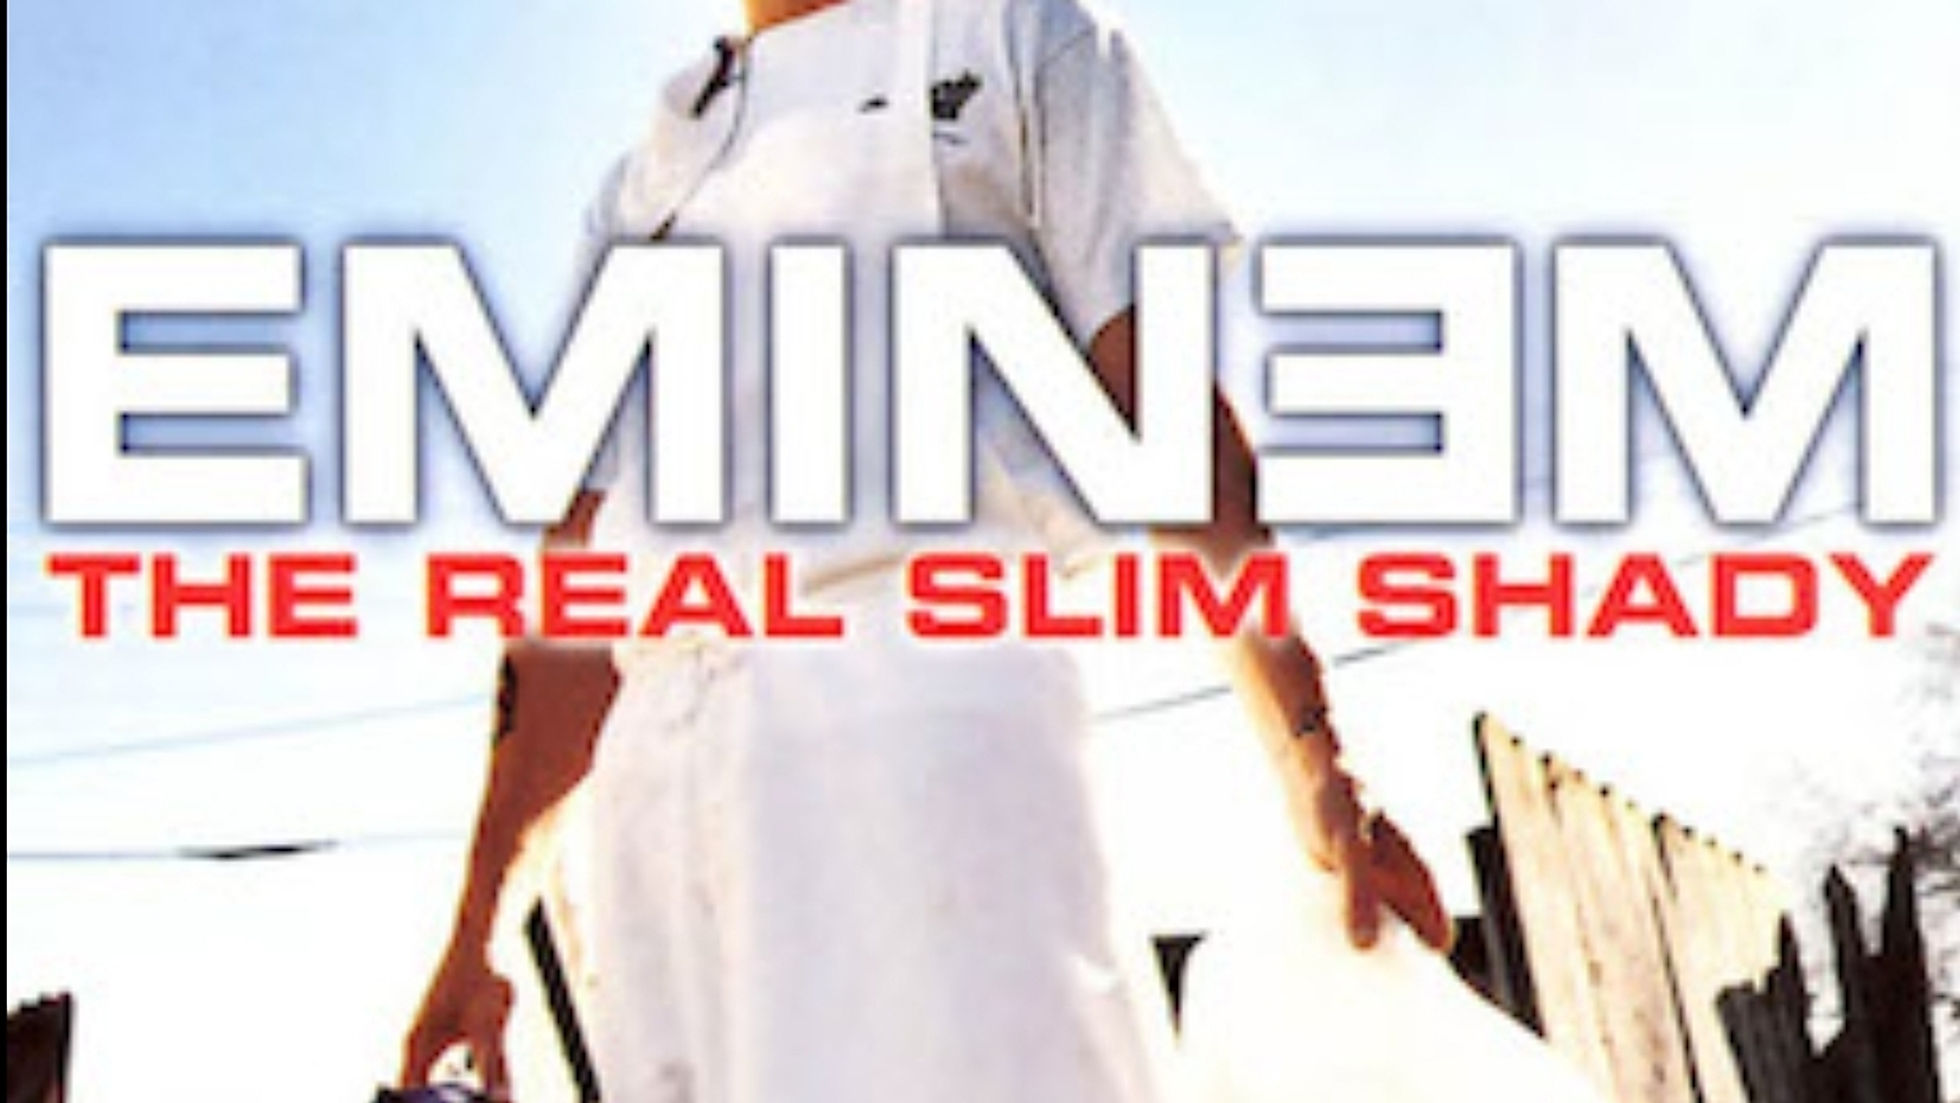 "The Real Slim Shady" Eminem